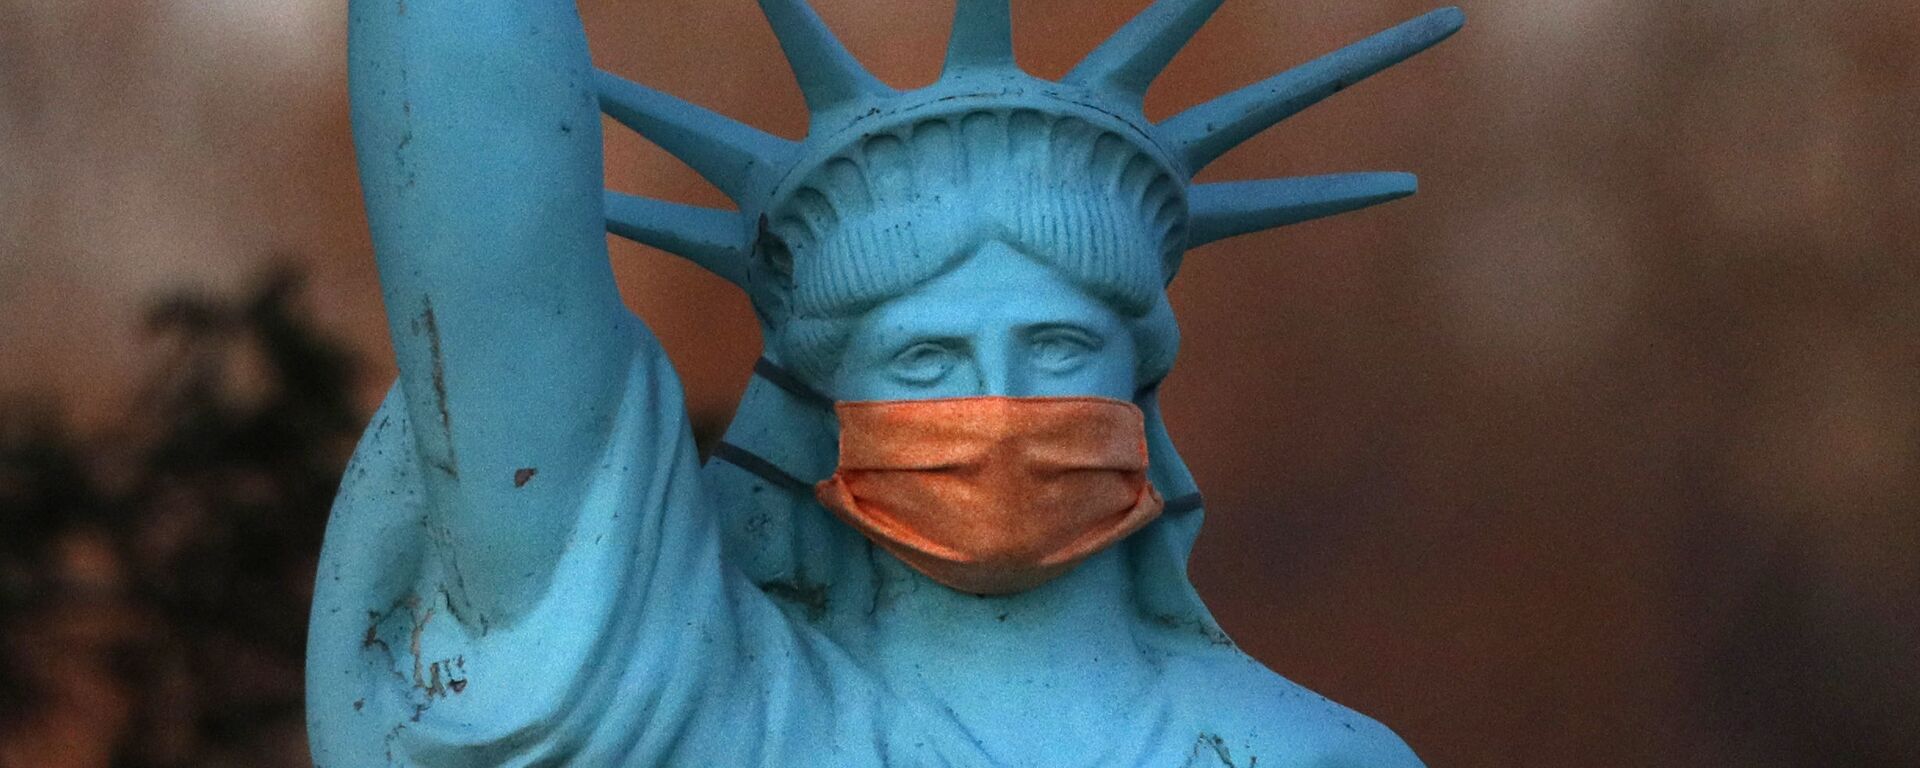 Реплика Статуи Свободы в защитной маске в штате Мэн, США - Sputnik Молдова, 1920, 16.06.2021